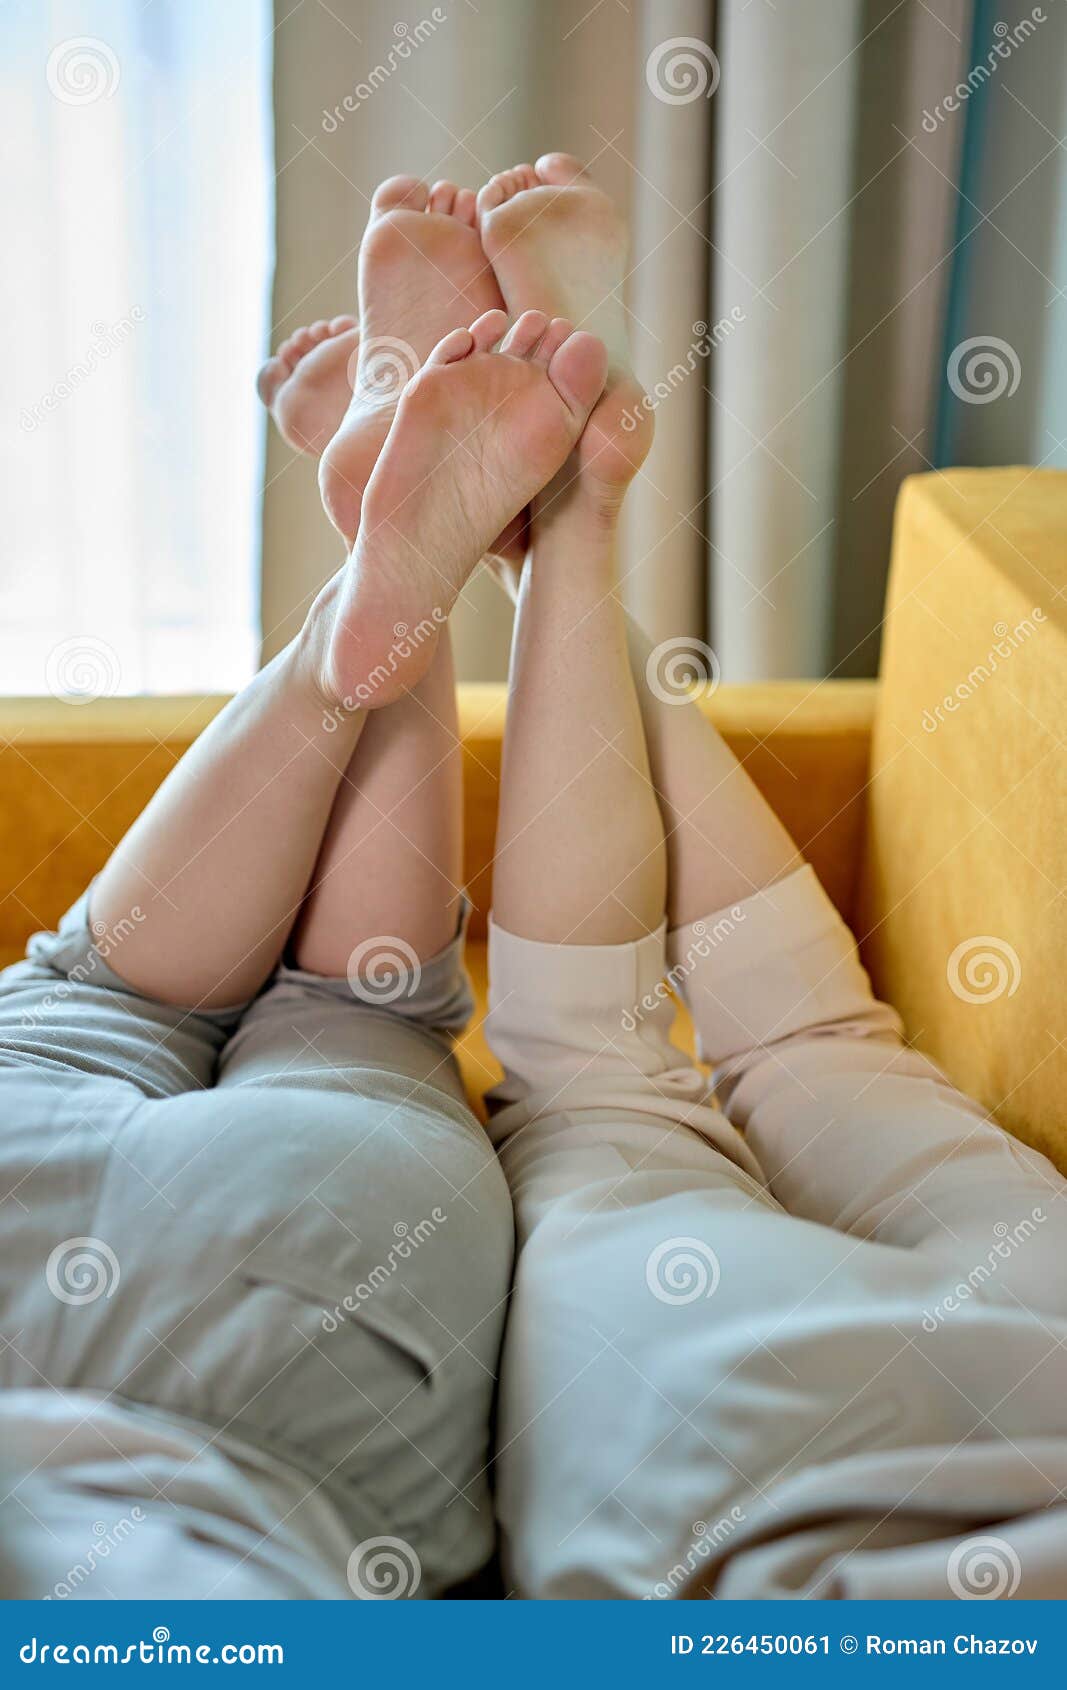 Lesbian feet pics